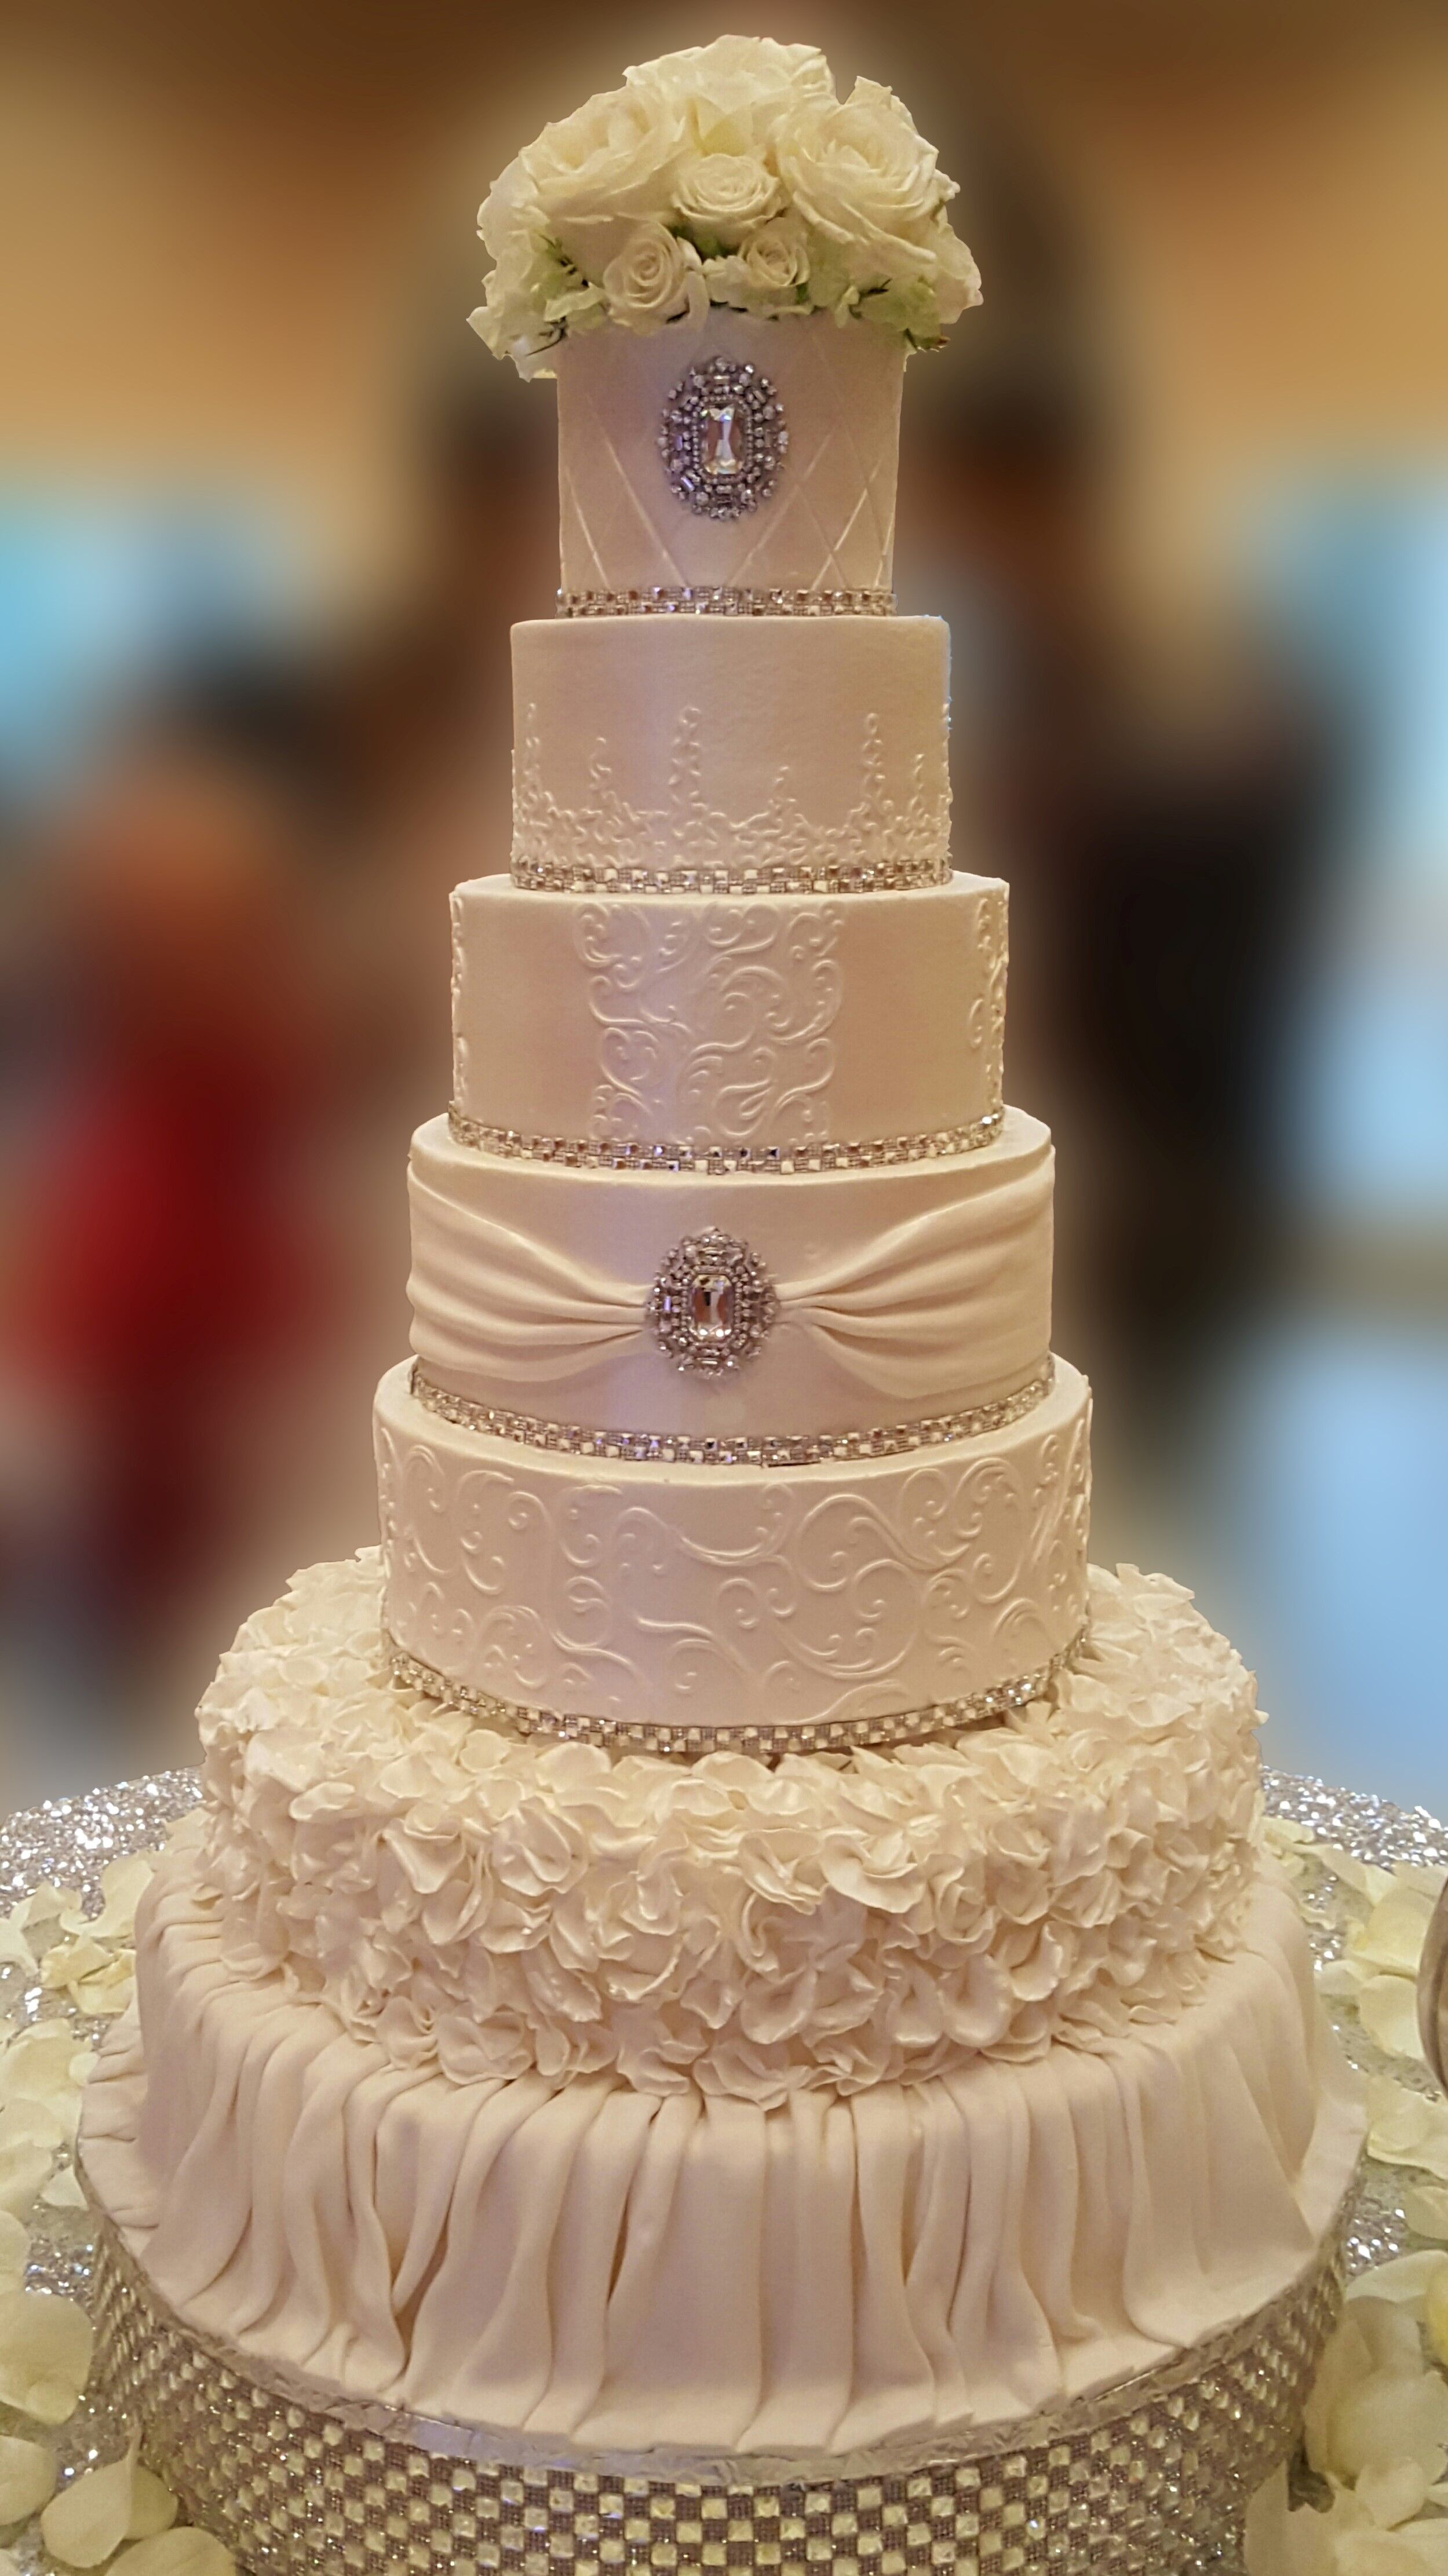 Wedding Cakes by Tammy Allen | Wedding Cakes - Houston, TX